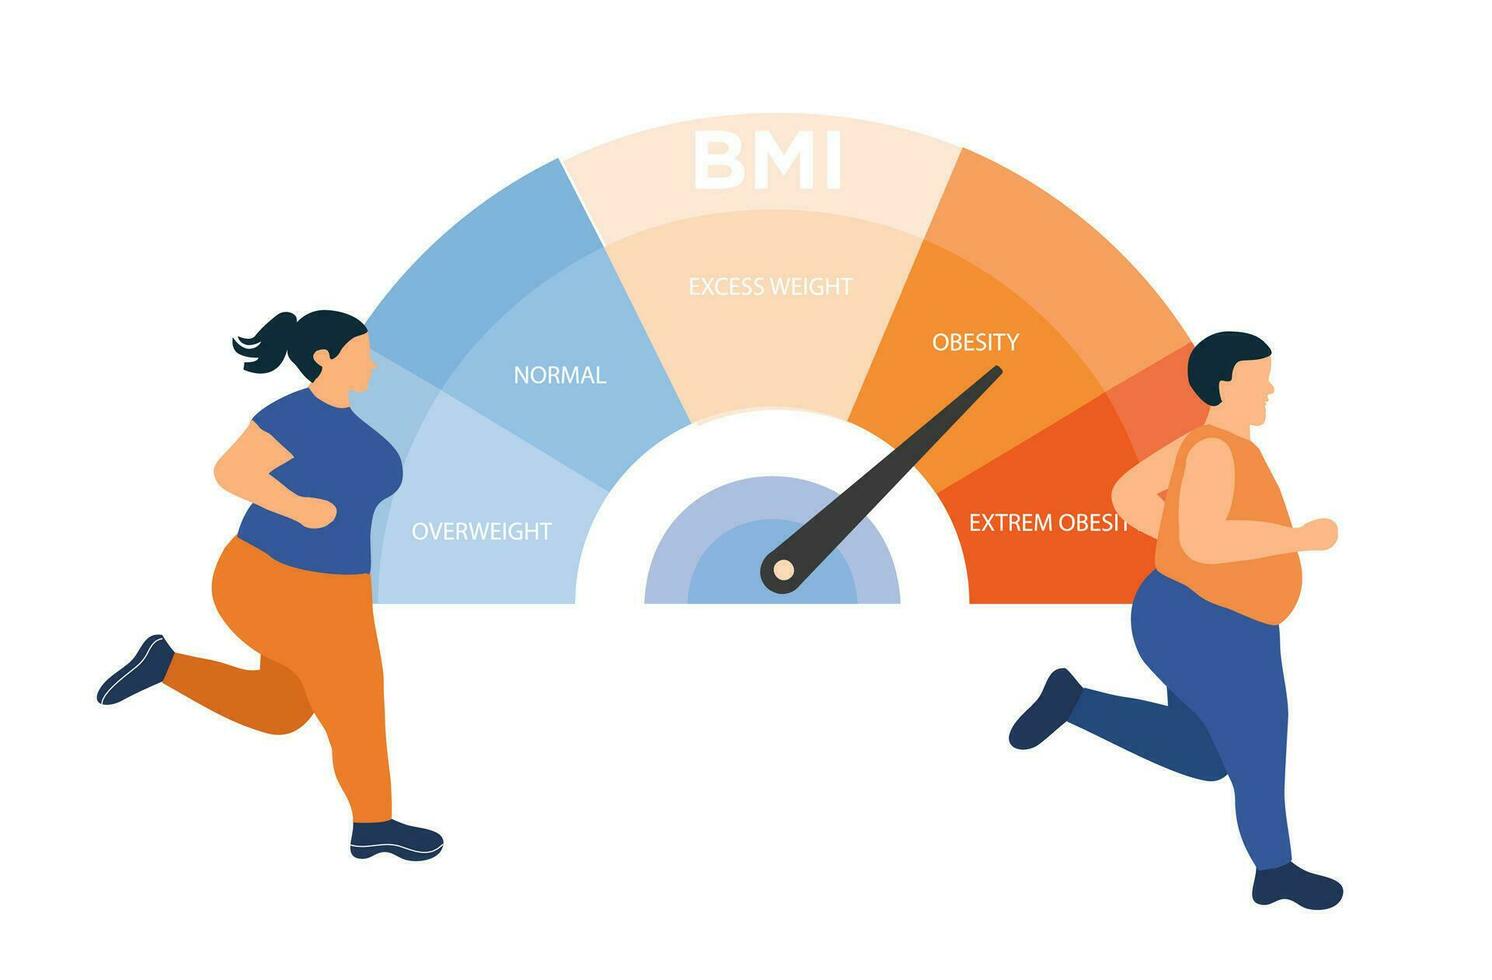 Grasso potrebbe controllo corpo con bmi corpo massa indice peso controllo nel esercitarsi. obesità, bmi, corpo massa indice controllo vettore illustrazione